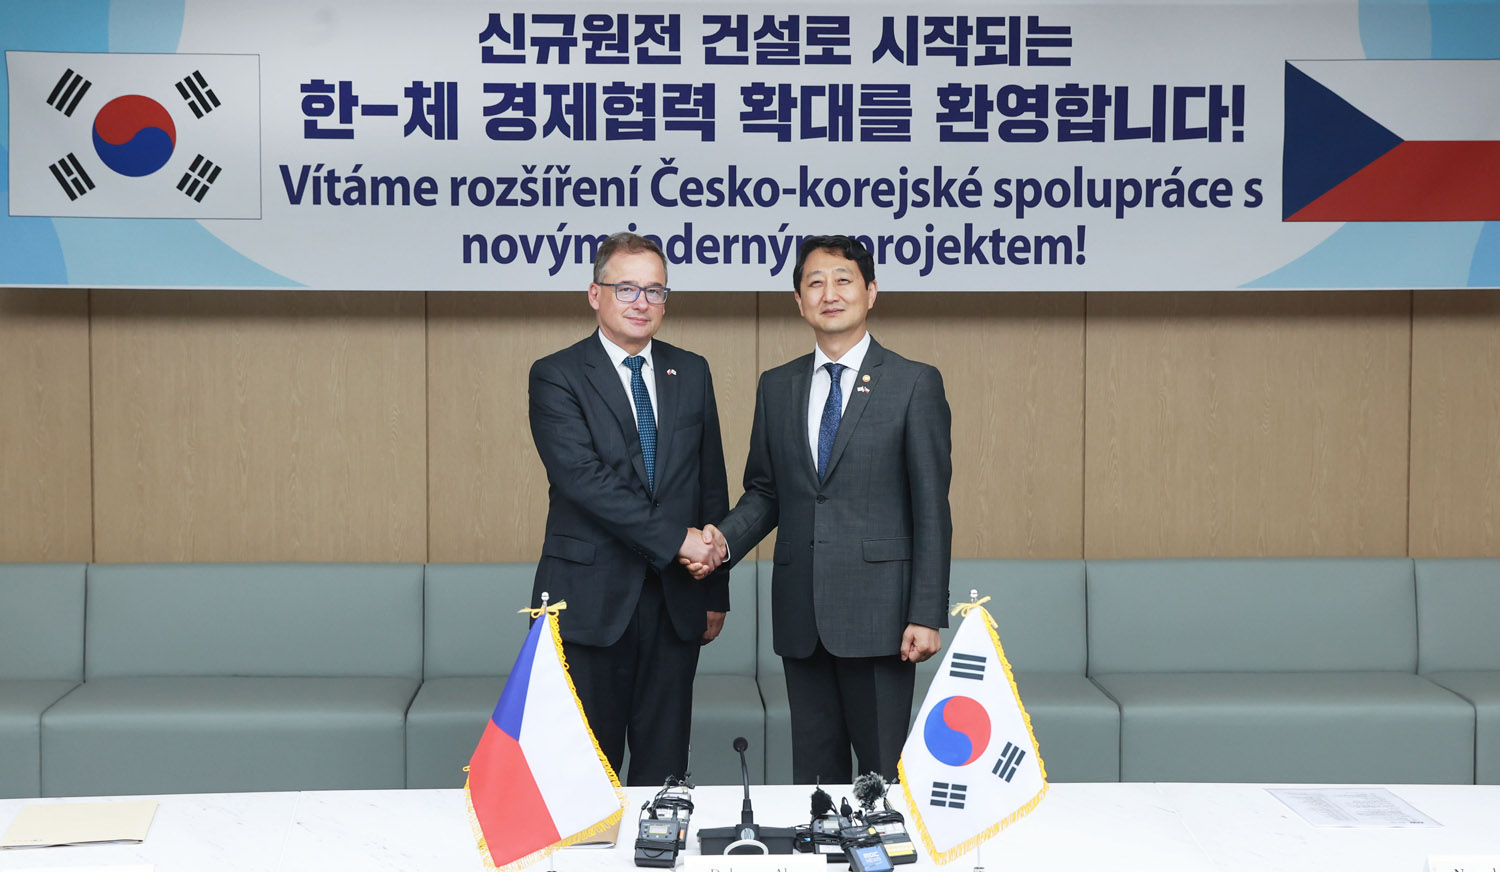 Minister Ahn meets Czech Republic Ambassador to Korea